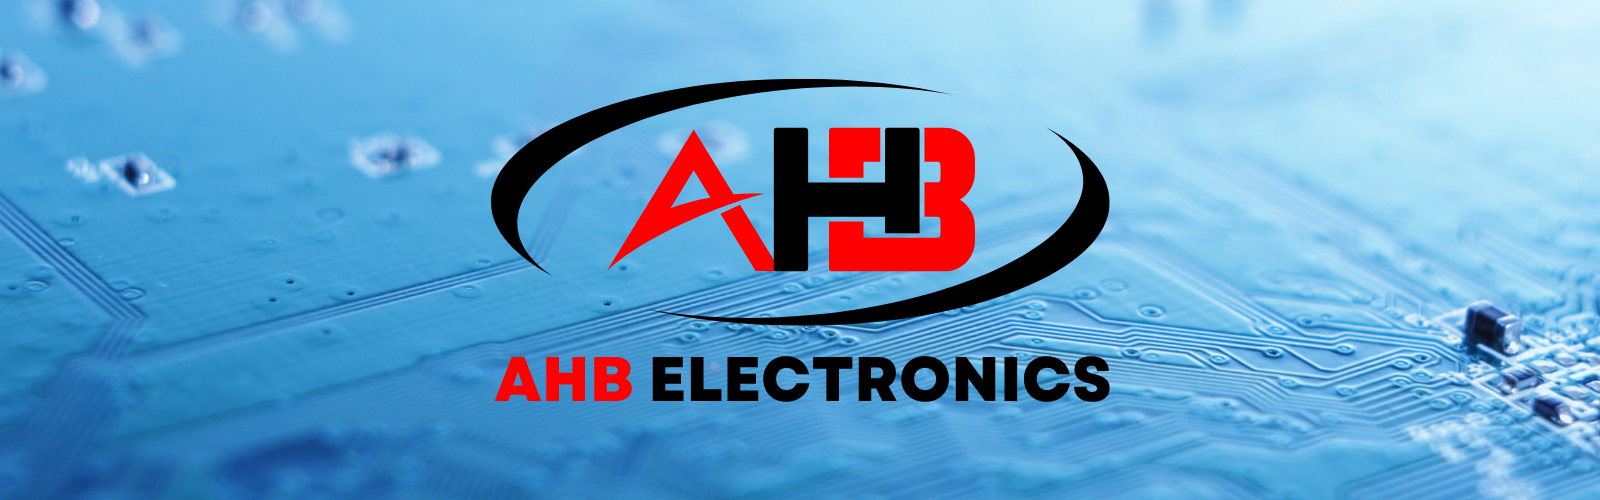 AHB Electronics